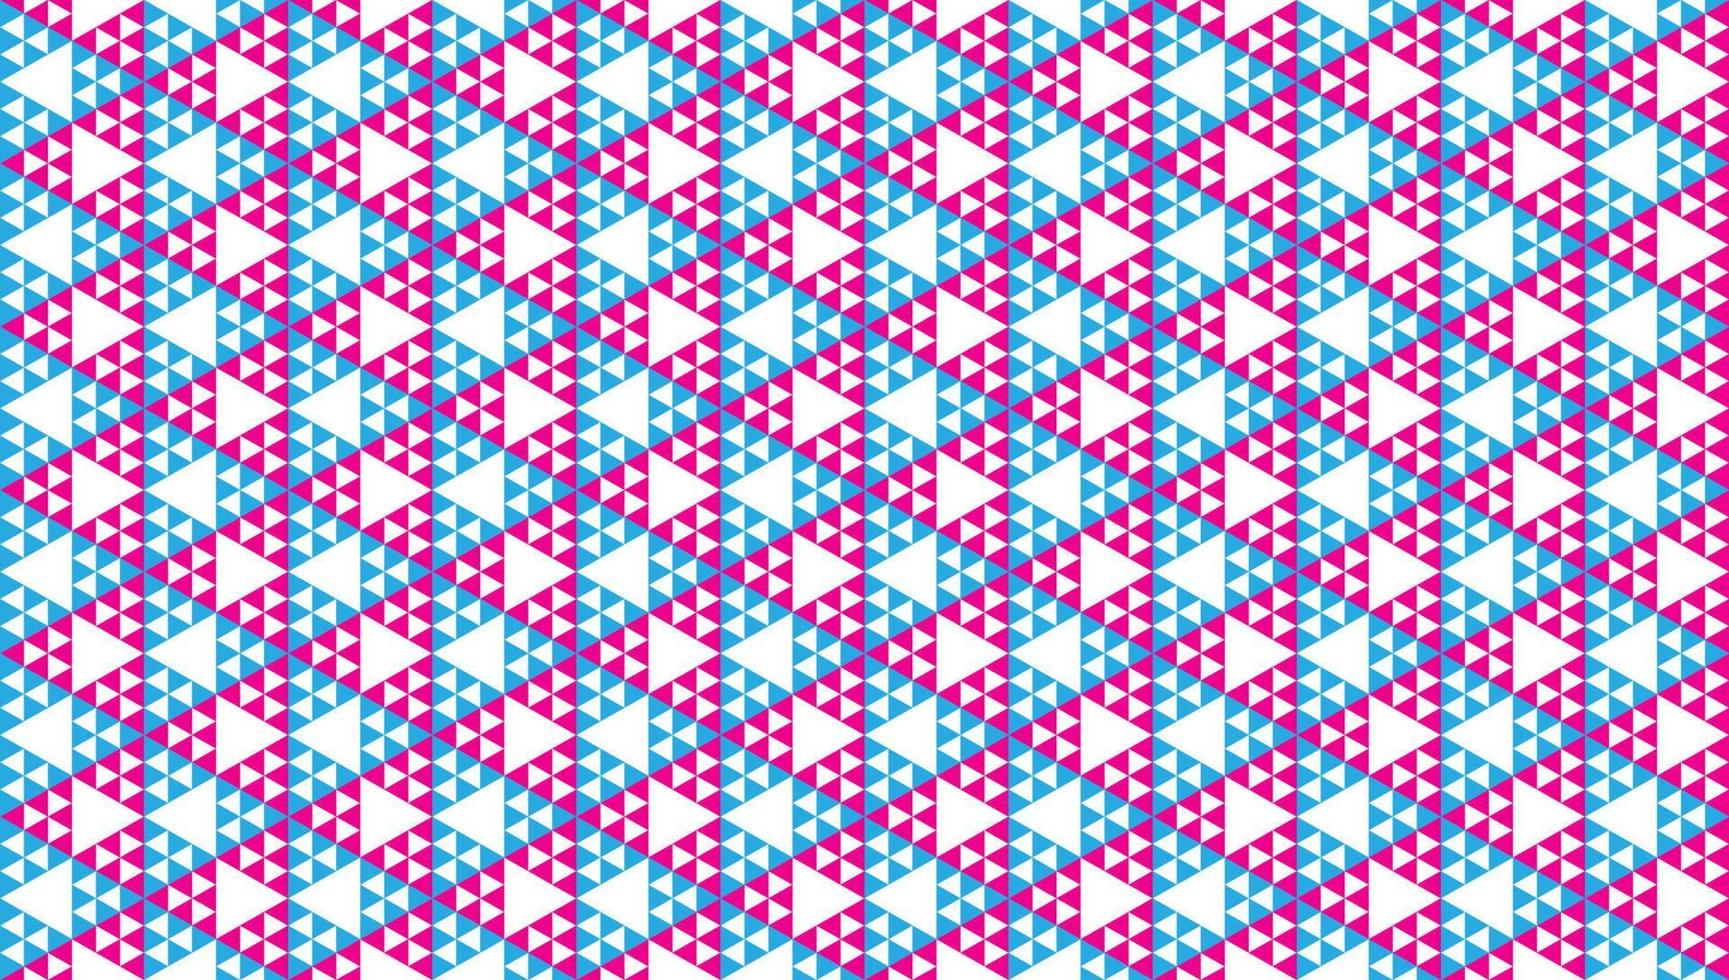 ornamento de triângulos abstratos coloridos. modelo de design geométrico padrão sem emenda. papel de parede de formas triangulares poligonais. tema de cor azul claro, rosa magenta e branco. vetor